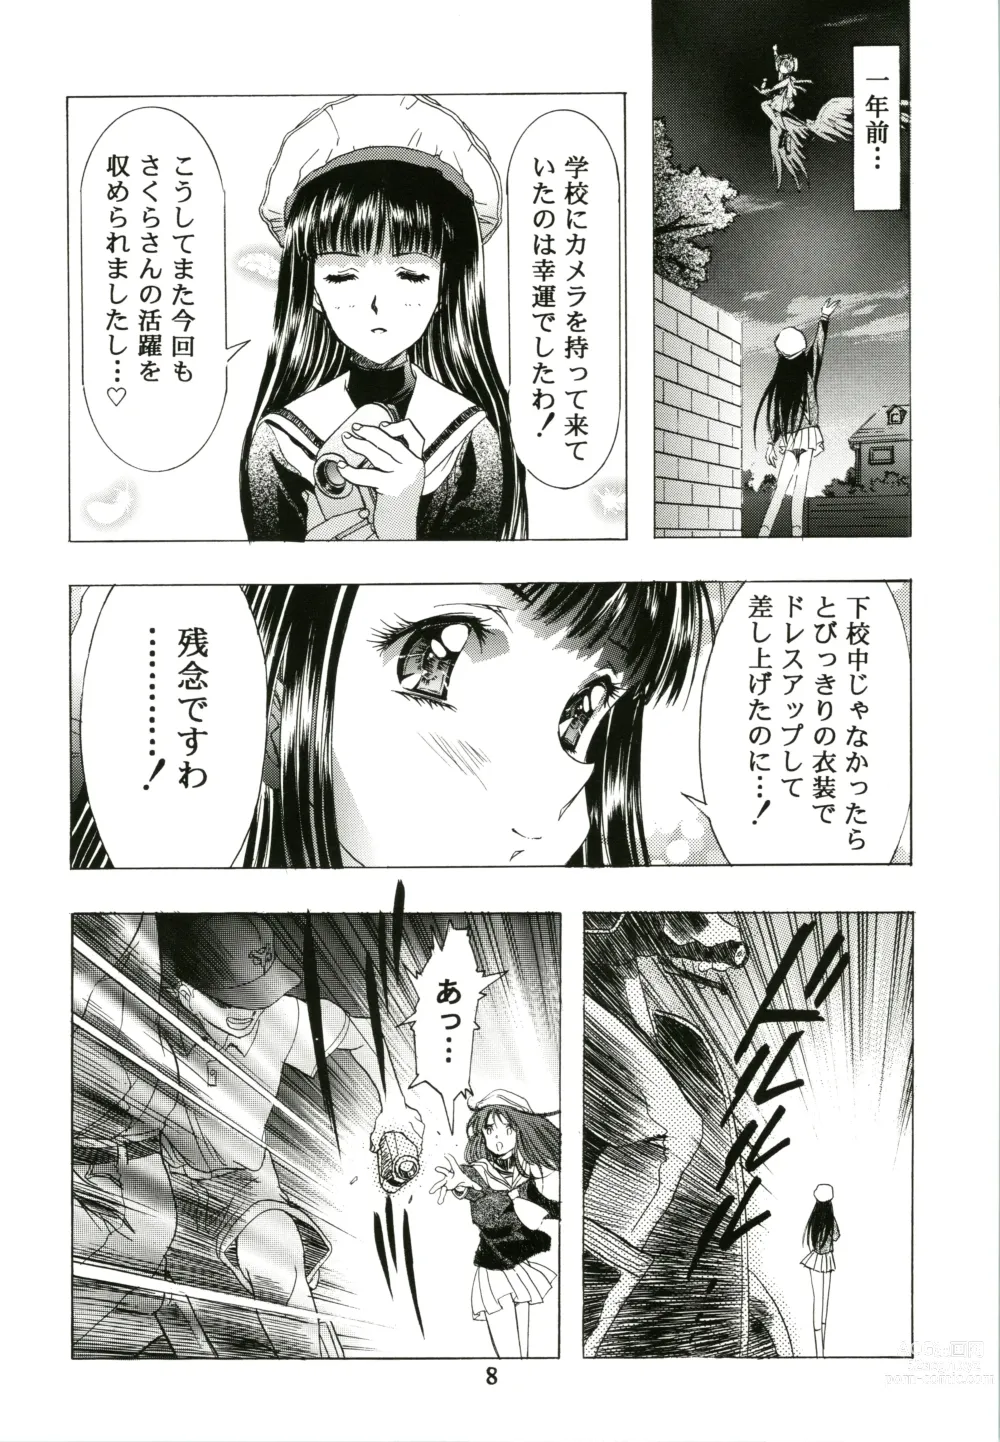 Page 8 of doujinshi Sakura Ame